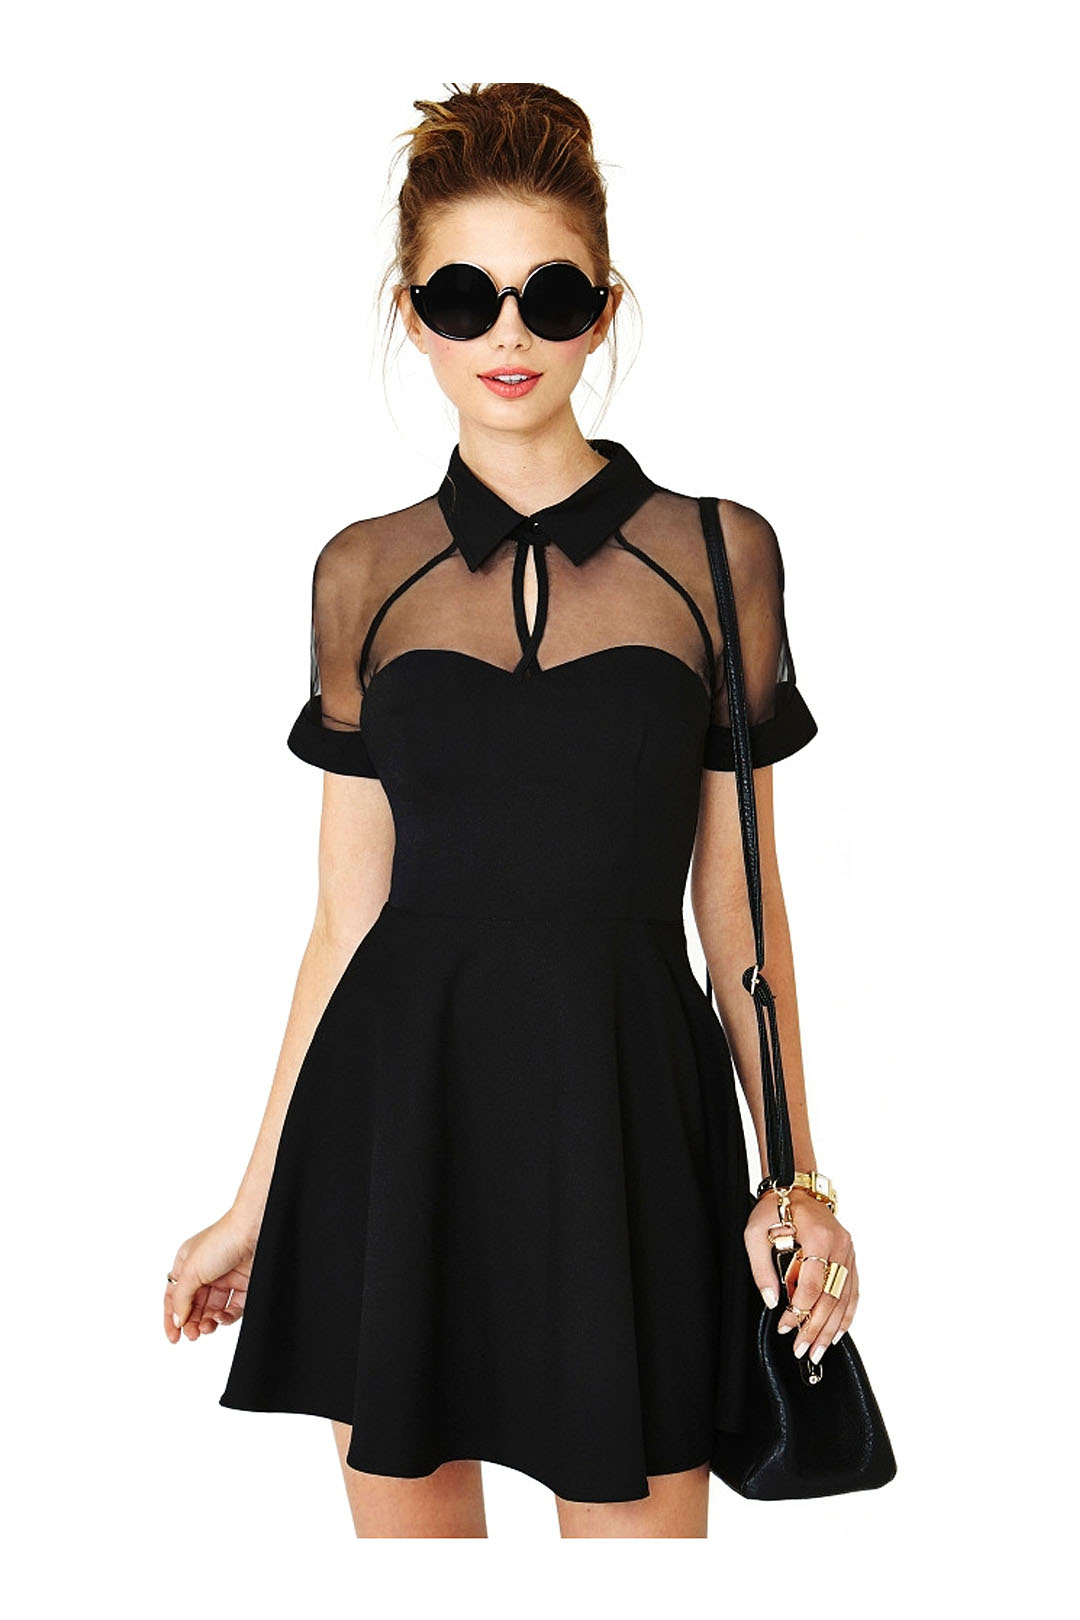 черное маленькое платье на грудь фото 11